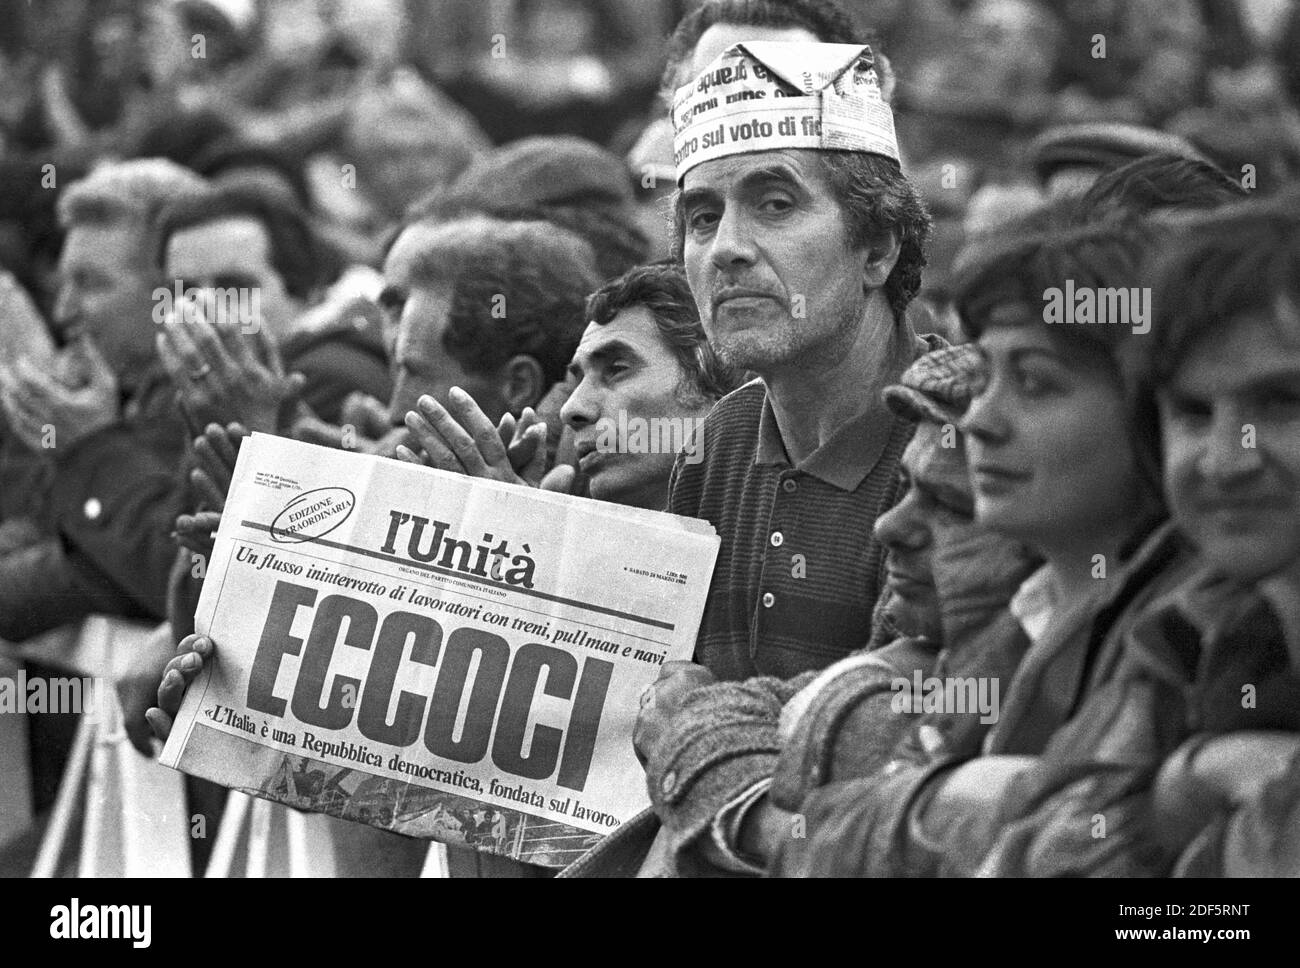 - manifestazione del PCI, Partita Comunista Italiano, contro il governo di Bettino Craxi (marzo 1984)....- manifestazione del PCI, Partito Comunista Italiano, contro il governo di Bettino Craxi (marzo 1984) Foto Stock